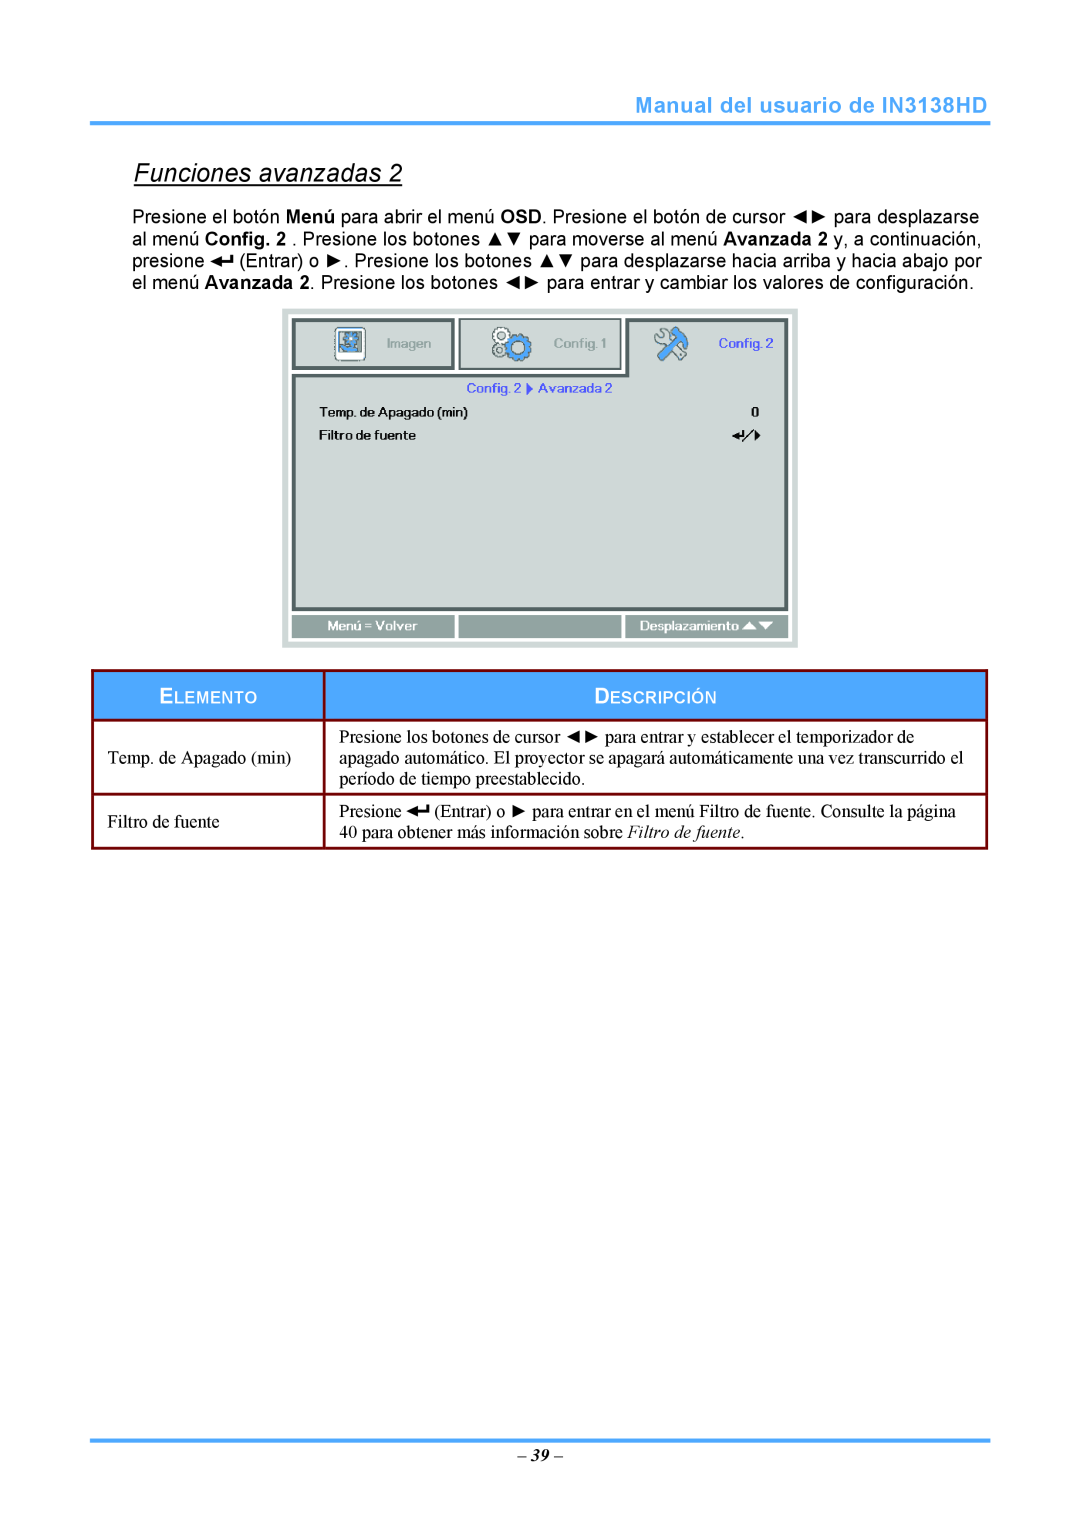 InFocus 3534324301 manual Funciones avanzadas, Manual del usuario de IN3138HD, Temp. de Apagado min 